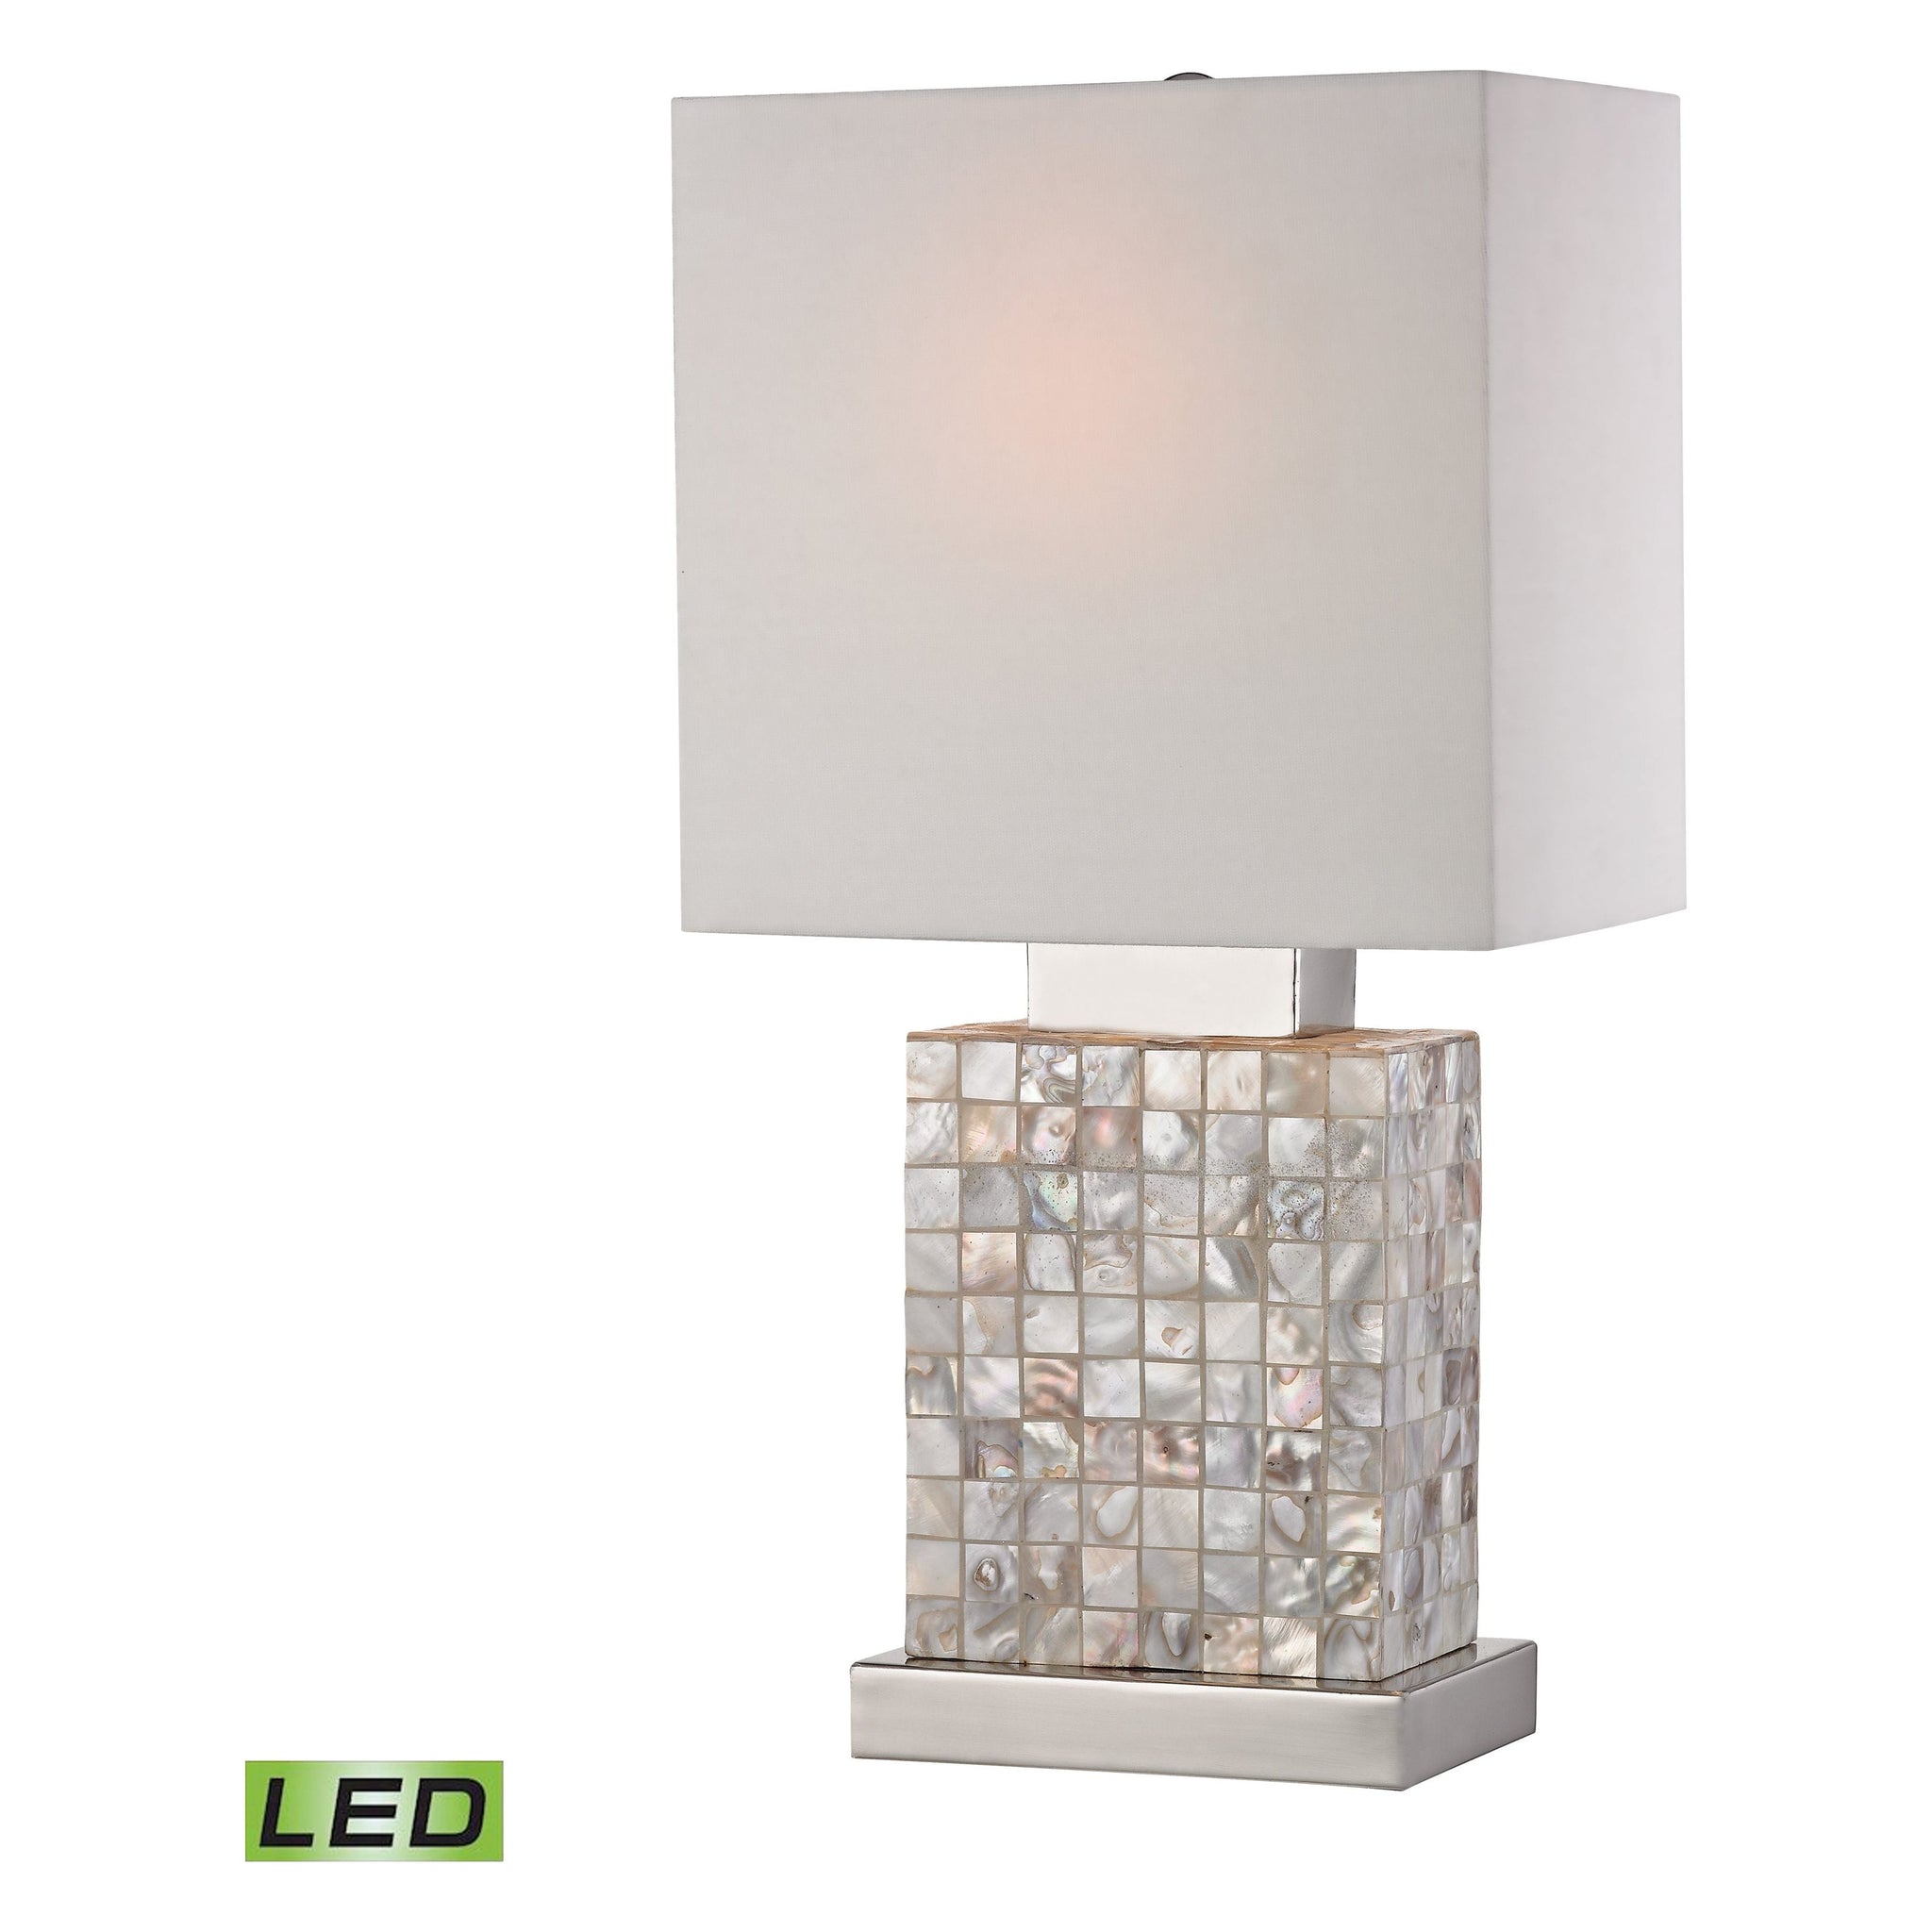 Sterling 17" High 1-Light Table Lamp